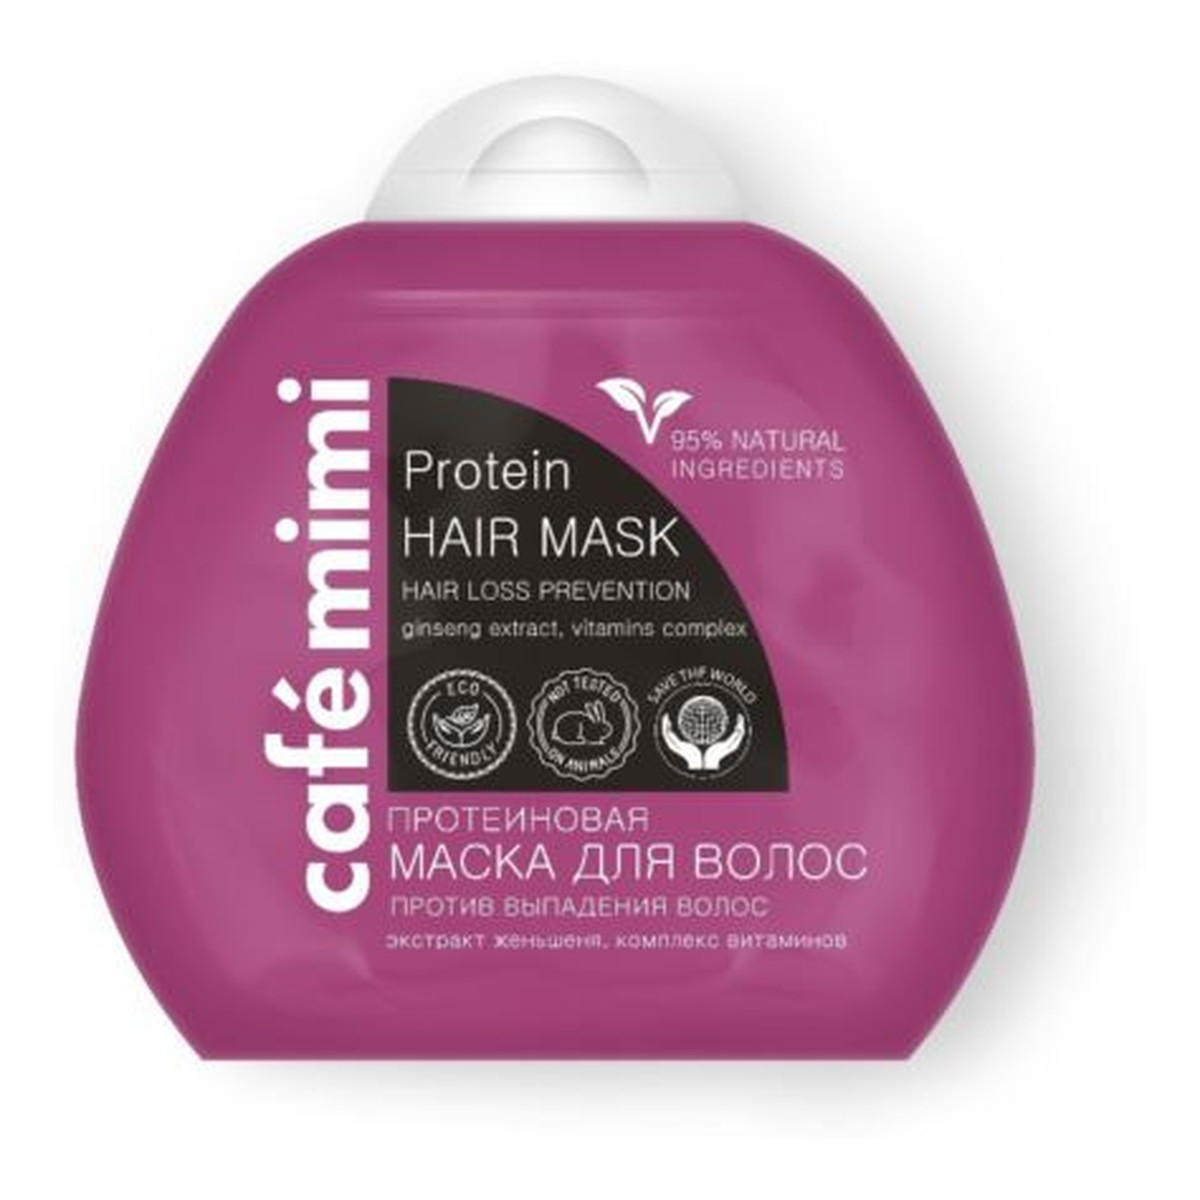 Le Cafe de Beaute Kafe Krasoty Cafe mimi Proteinowa maska do włosów - przeciw wypadaniu - proteiny roślinne, ekstrakt żeń szenia, kompleks witamin B3, B5, B6, C, E, - 95% składników naturalnych 100ml